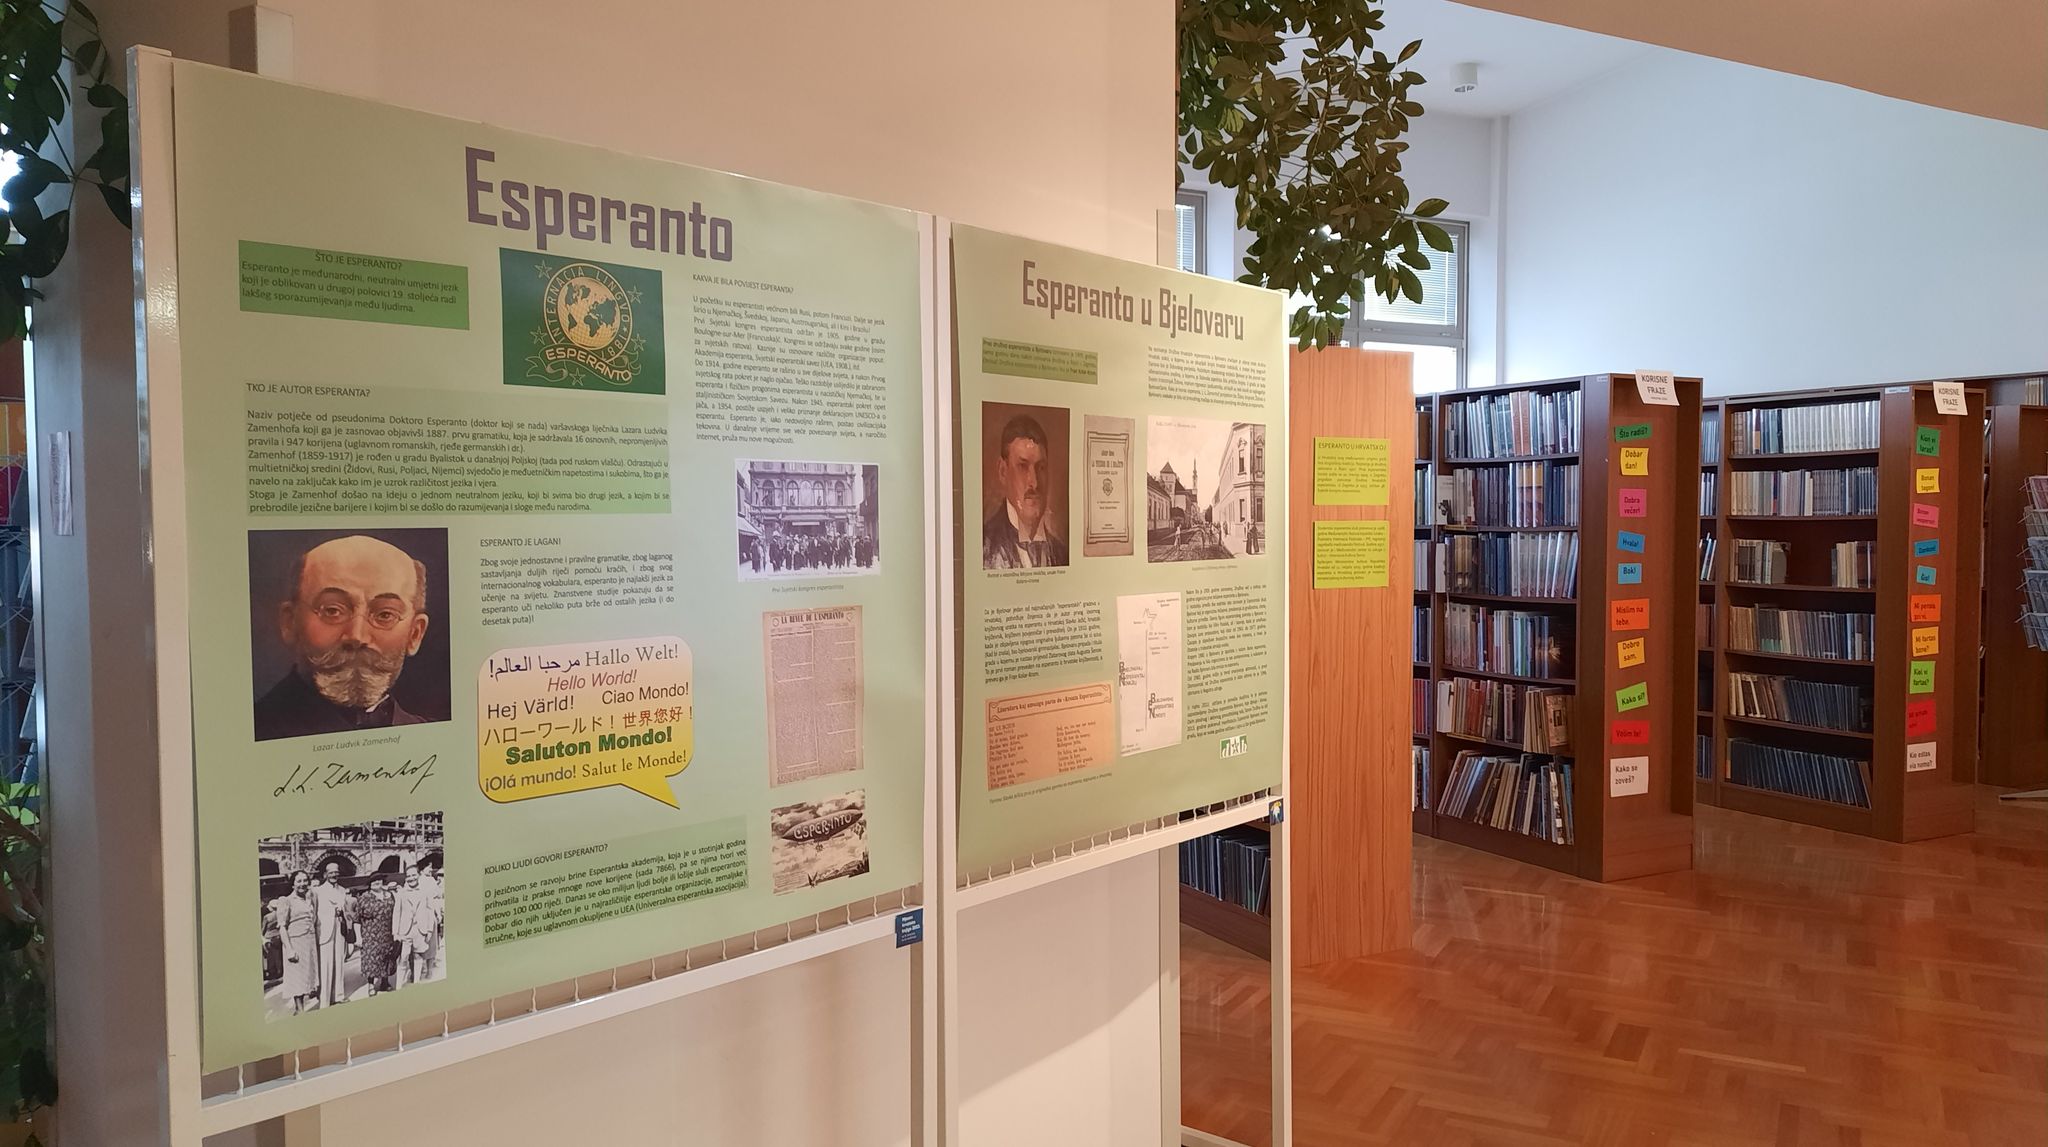 Sve o hrvatskoj književnosti na esperantu doznajte u knjižnici srednjoškolskog centra!